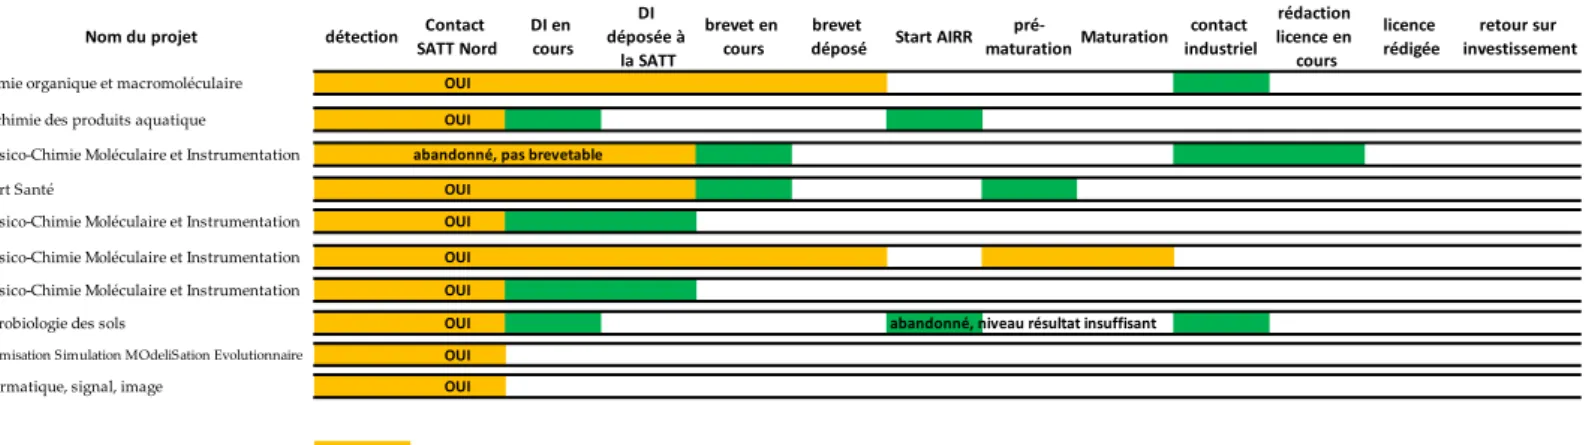 Tableau 1. Détection et suivi de projets de valorisation   Source : Dirval – ULCO 2020 